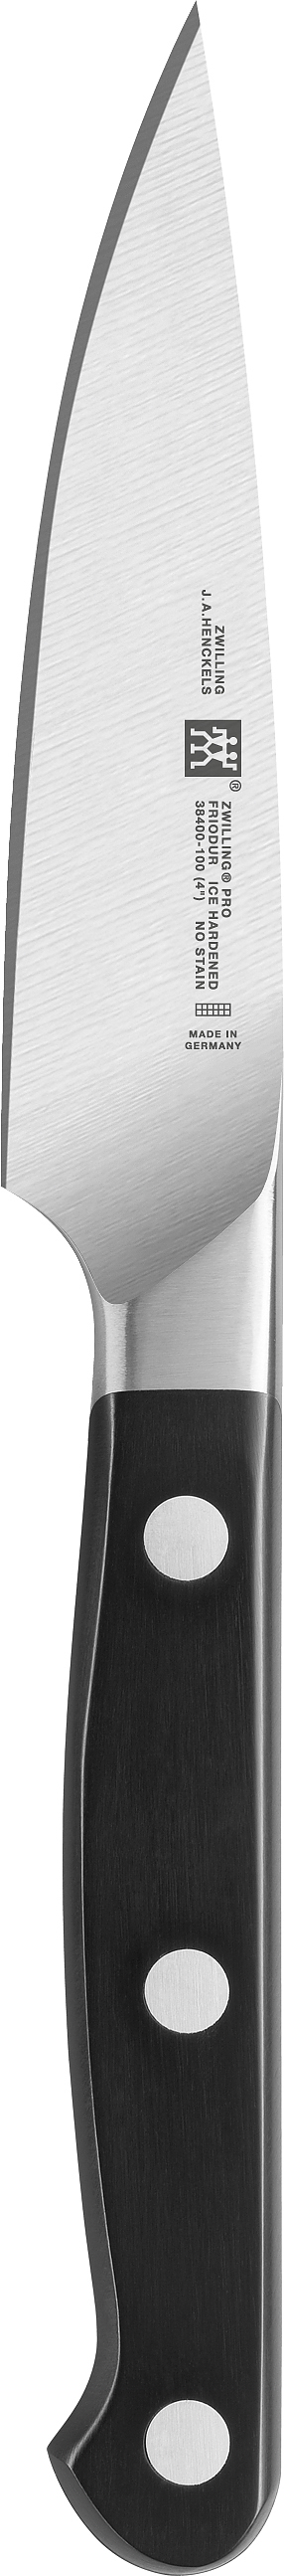 ZWILLING Pro Compact 2 szt. czarne - noże kuchenne ze stali nierdzewnej 